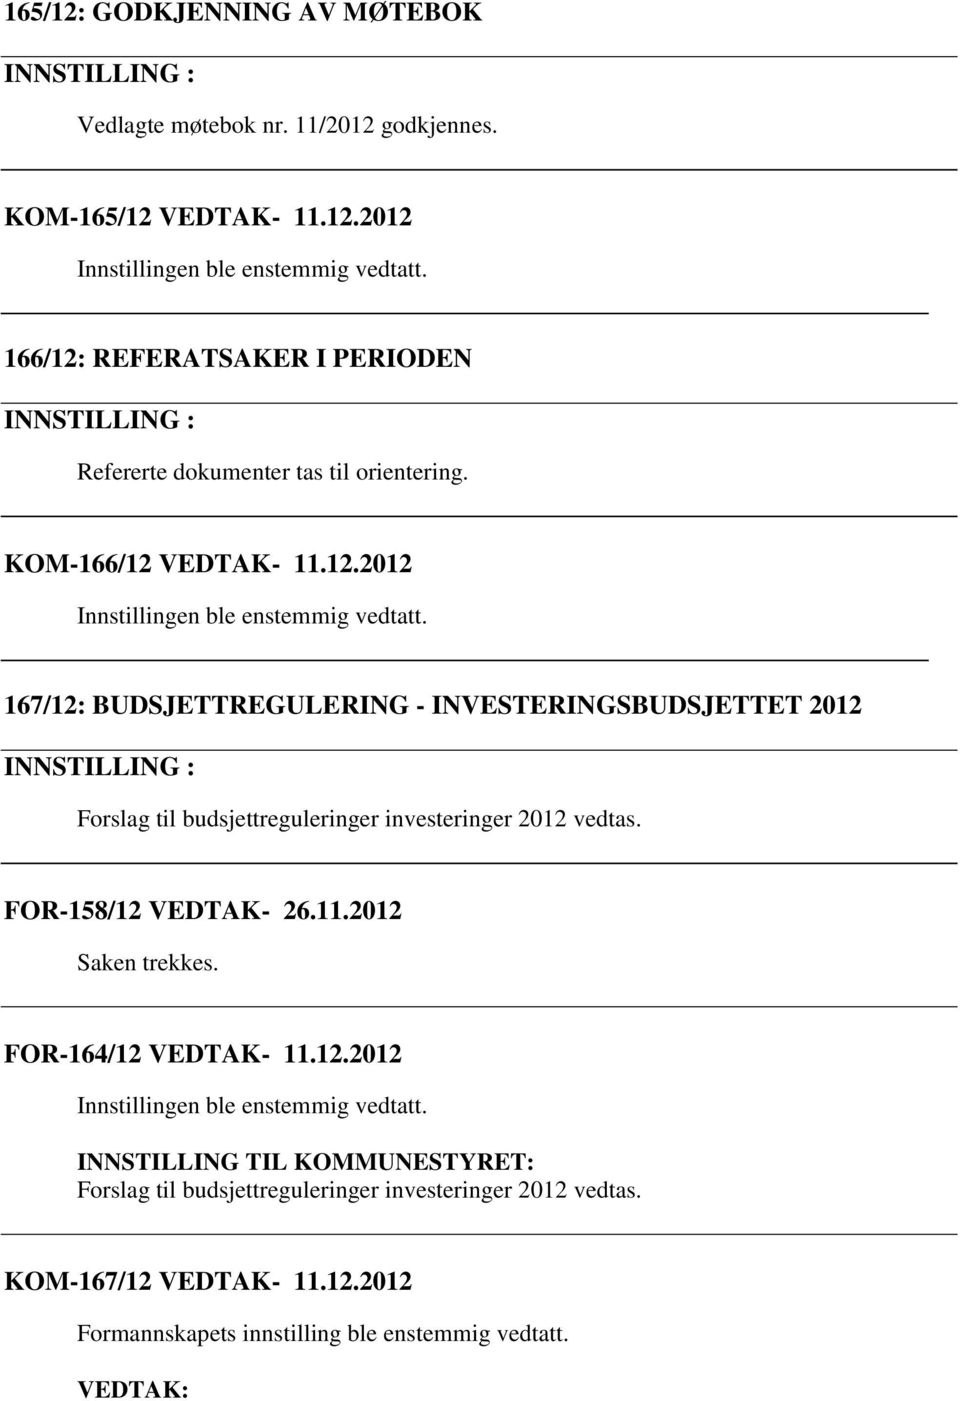 FOR-158/12 VEDTAK- 26.11.2012 Saken trekkes. FOR-164/12 VEDTAK- 11.12.2012 INNSTILLING TIL KOMMUNESTYRET: Forslag til budsjettreguleringer investeringer 2012 vedtas.